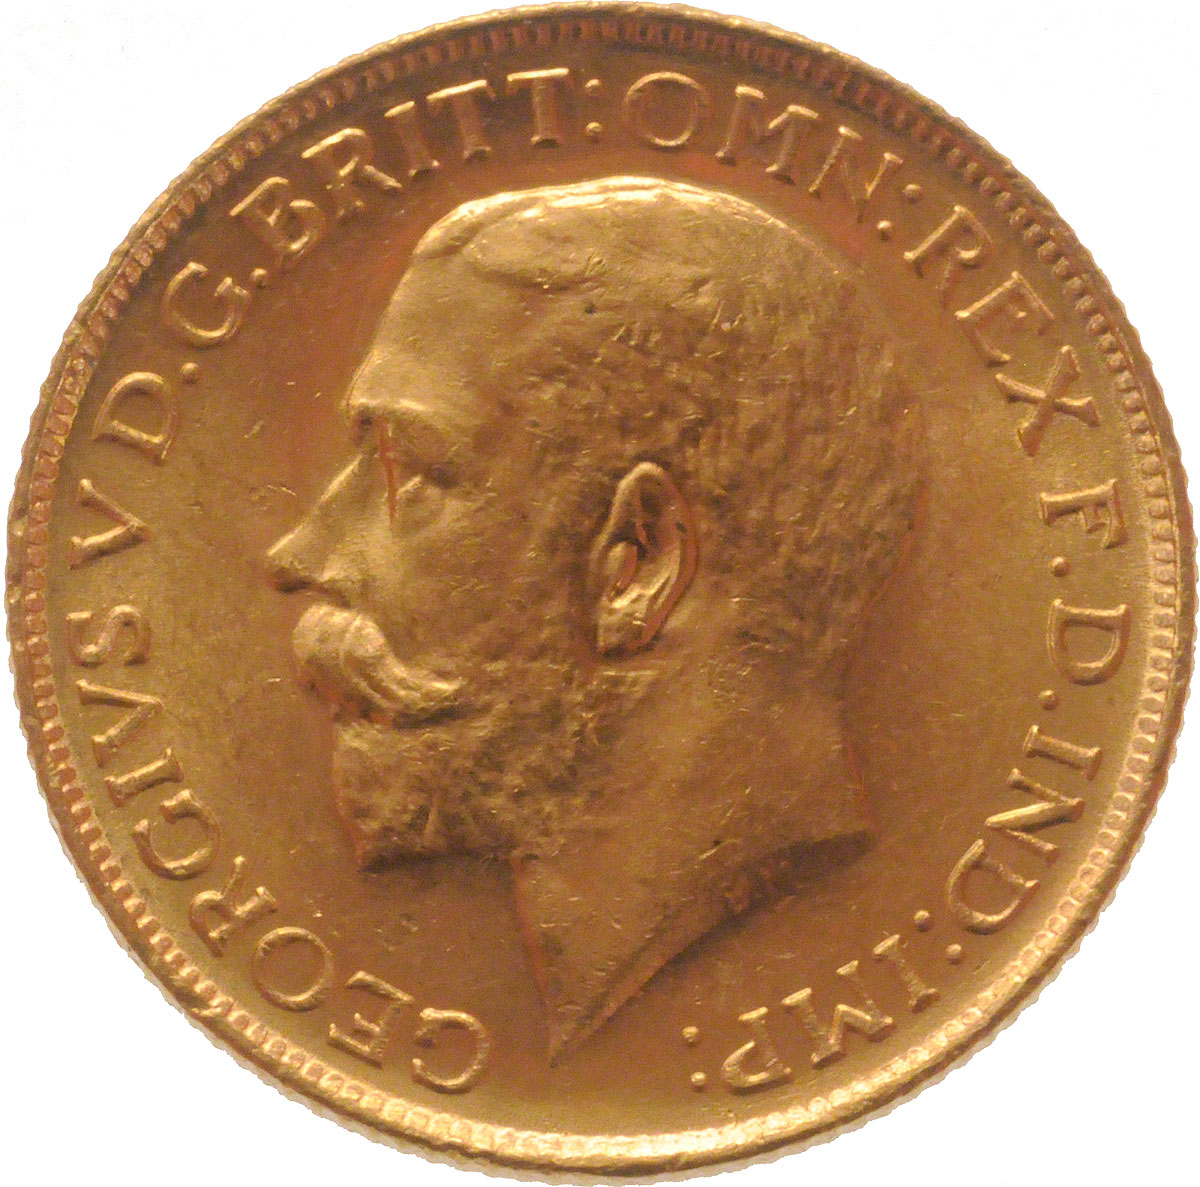 1915 Γεώργιος Ε’ (Νομισματοκοπείο Σίδνεϊ)